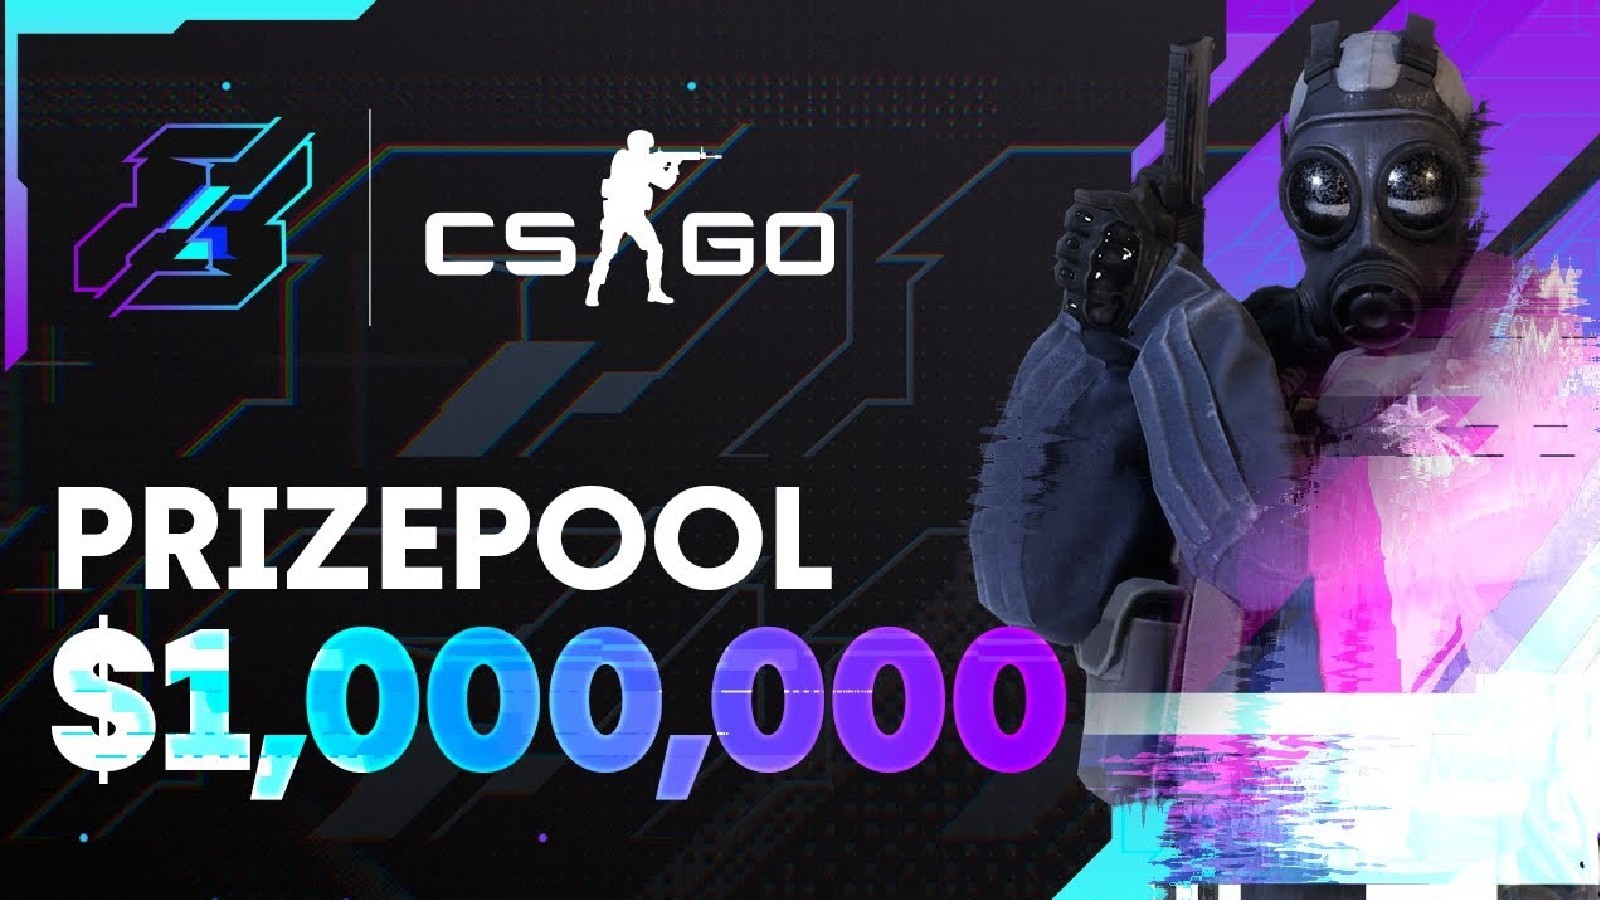 CSGO si unisce alla formazione di eSport di Gamers8 con un torneo da $ 1 milione